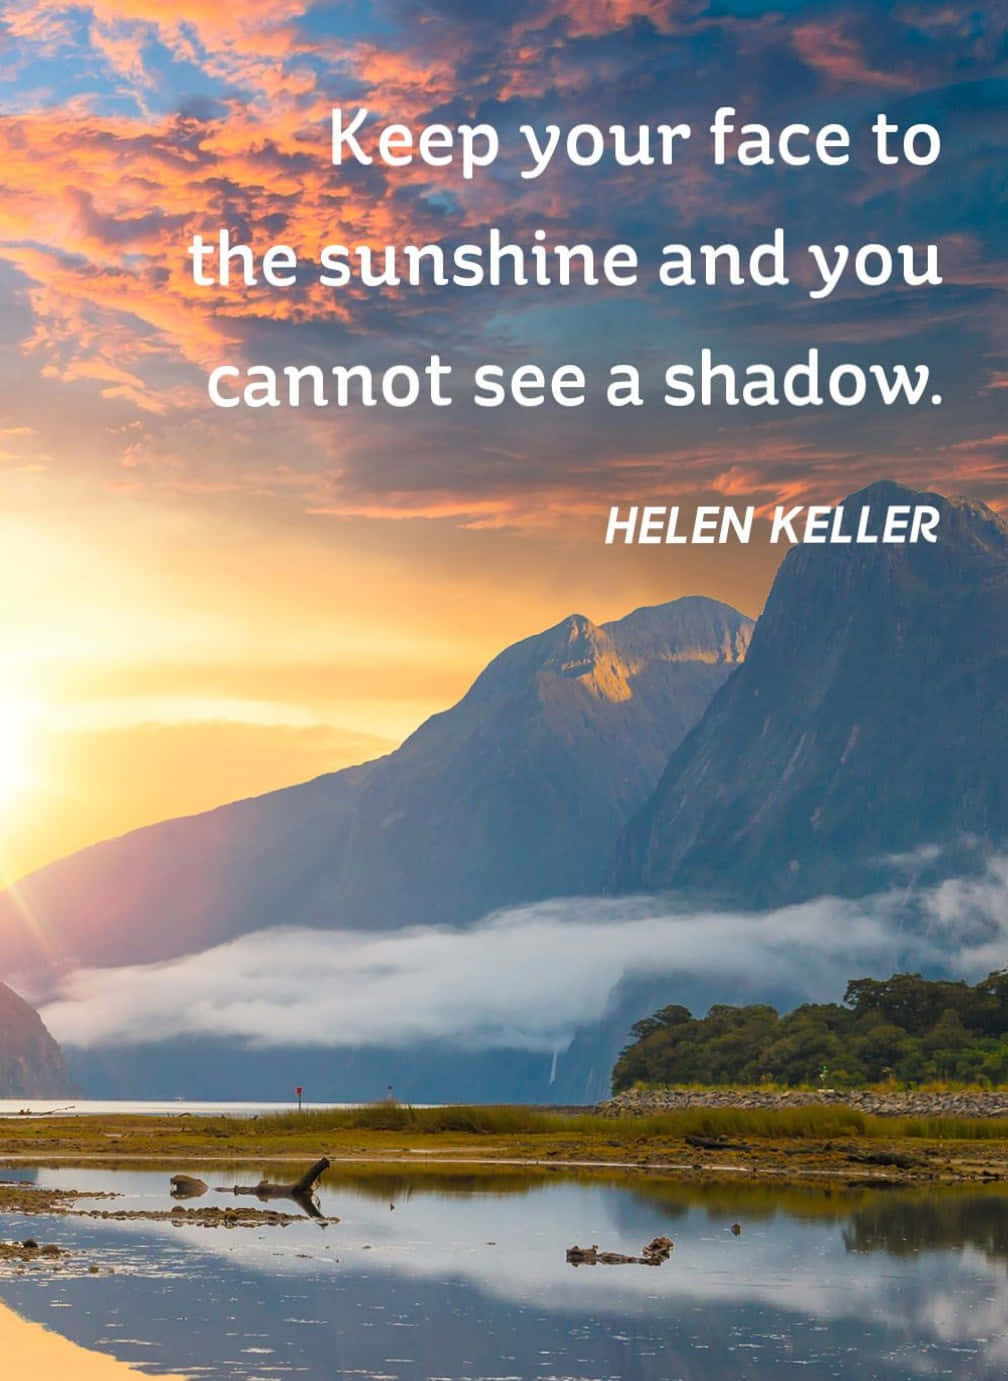 Mantenhaseu Rosto Voltado Para A Luz Do Sol E Você Não Conseguirá Ver Nenhuma Sombra - Helen Keller